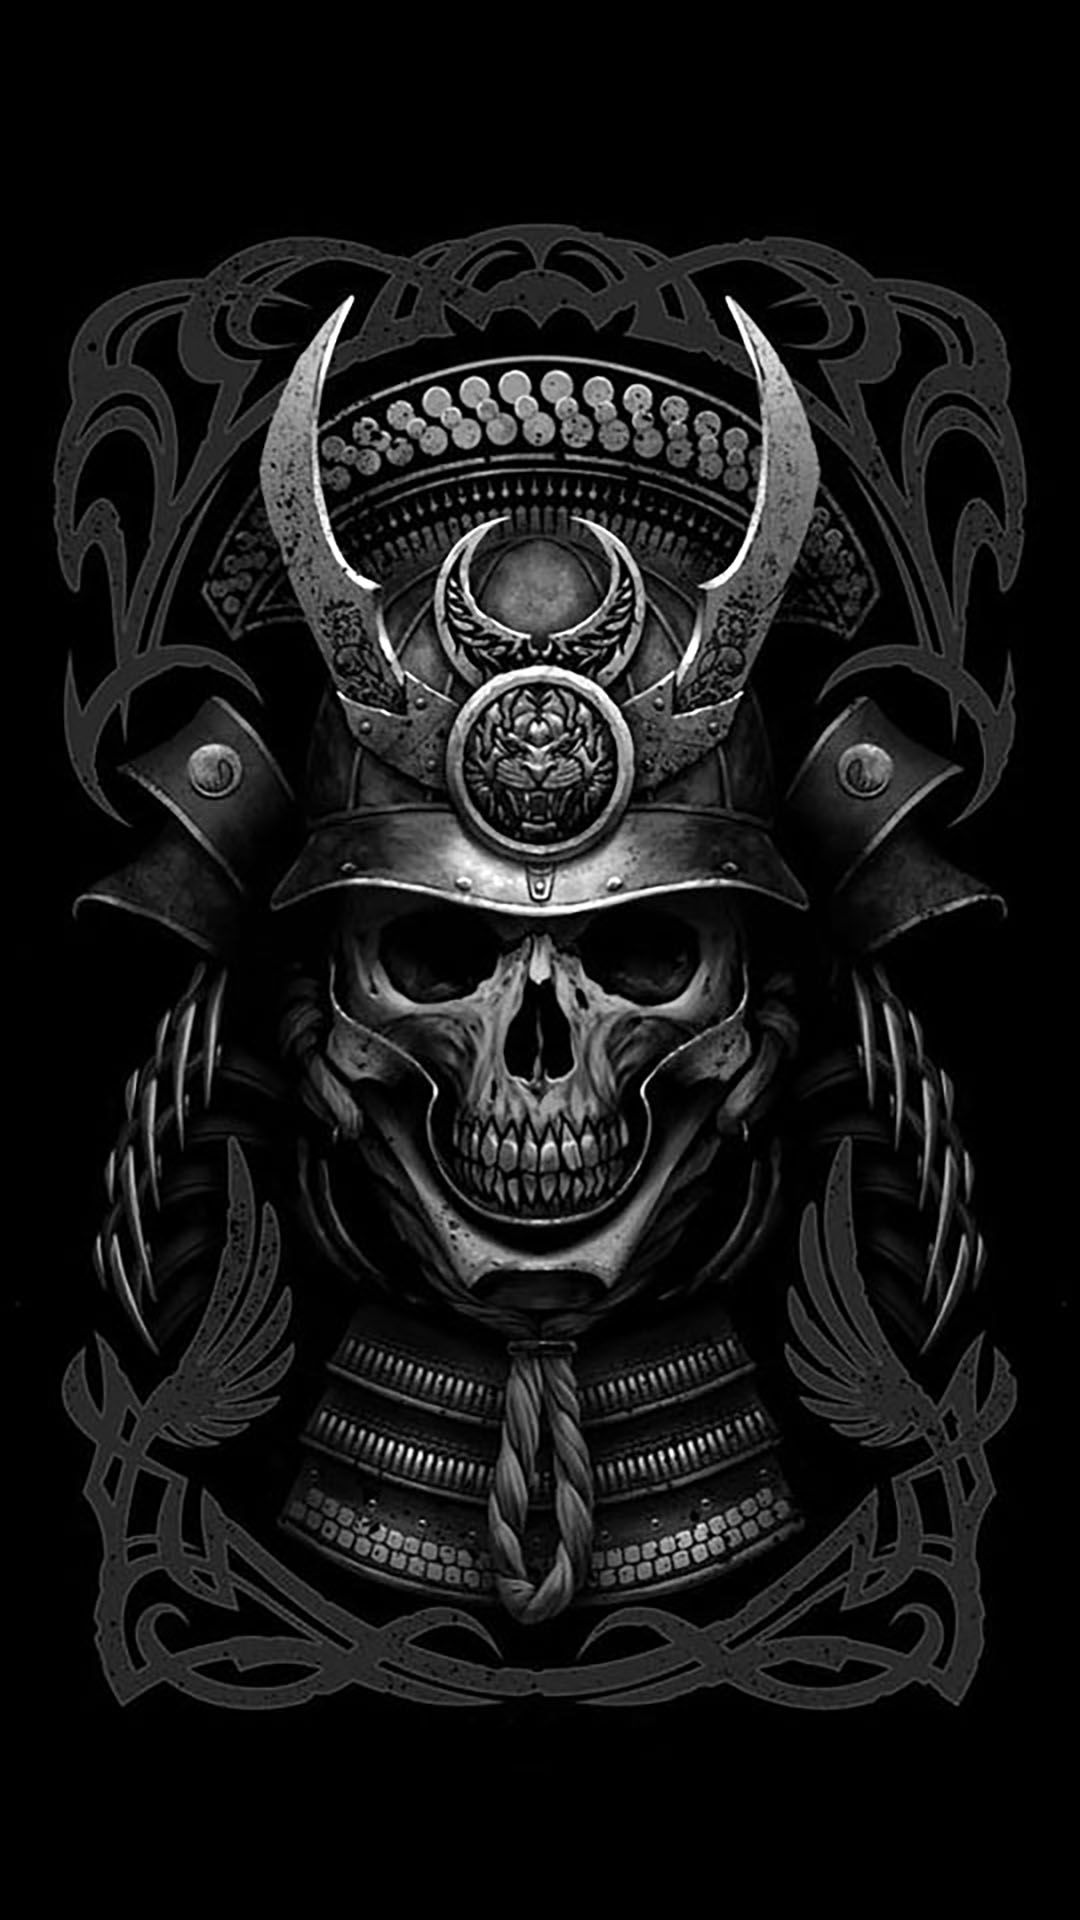 Samurai Skull Wallpaper Free Samurai Skull Background